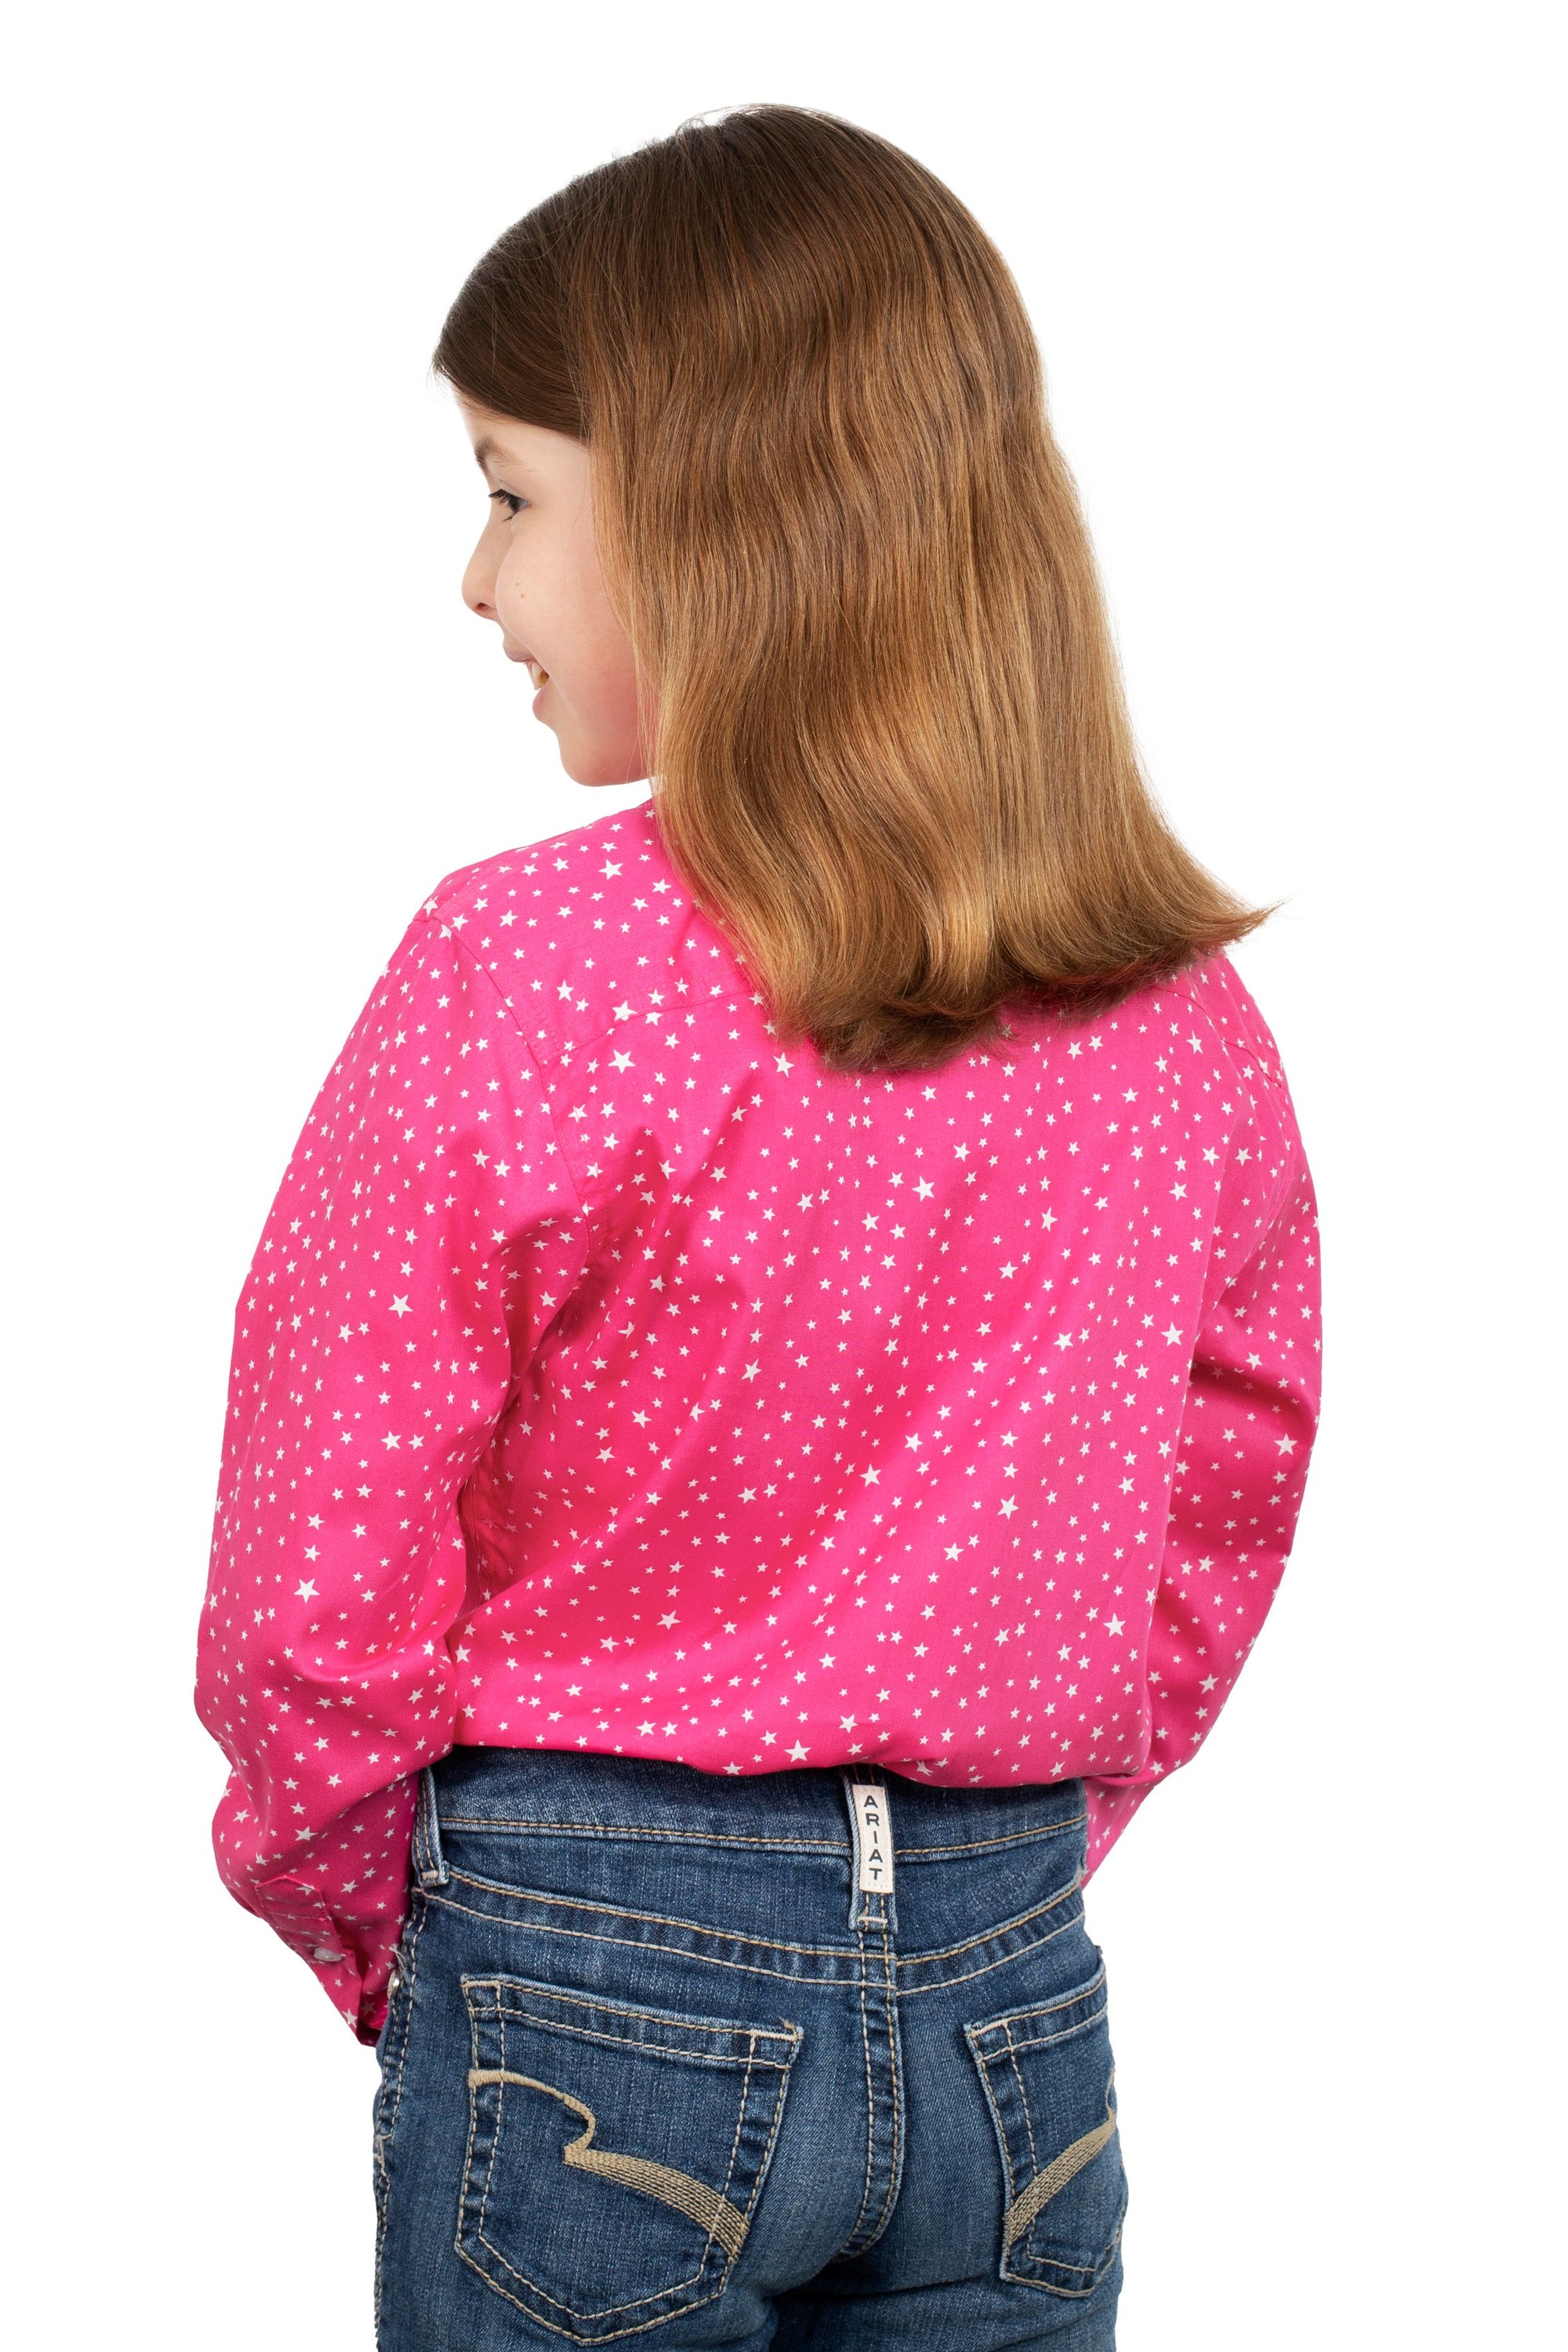 Just Country Gls Harper Half Button Print Workshirt Hot Pink Stars